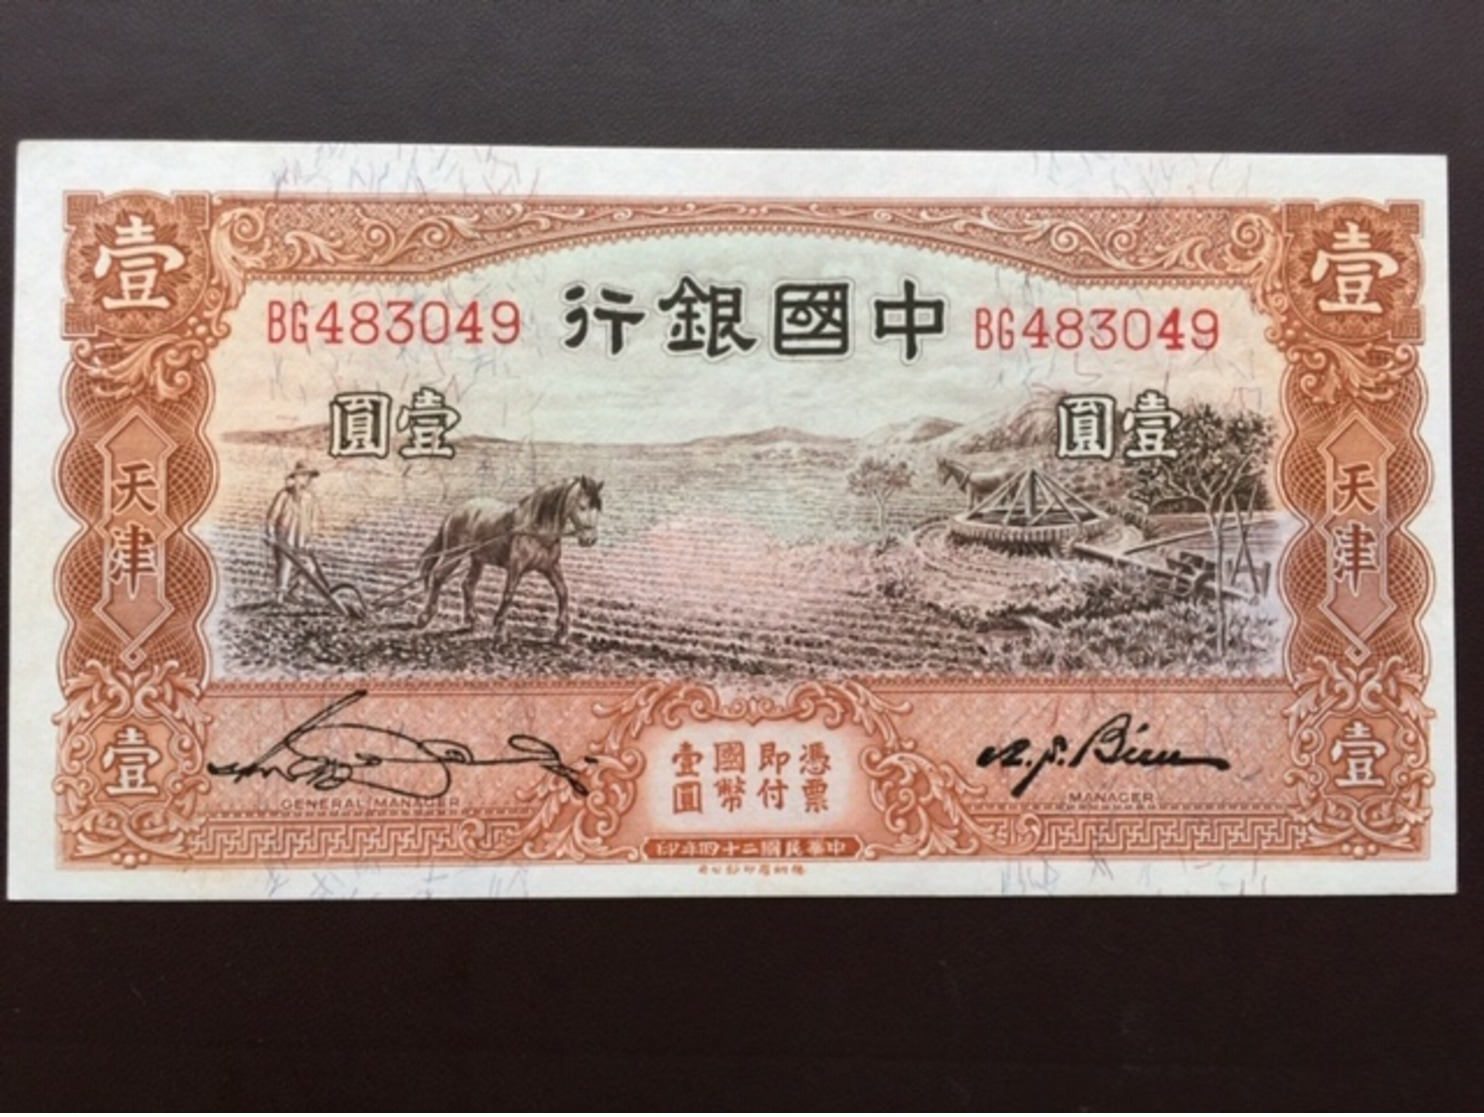 CHINA P76 1 YUAN 1935 UNC - China